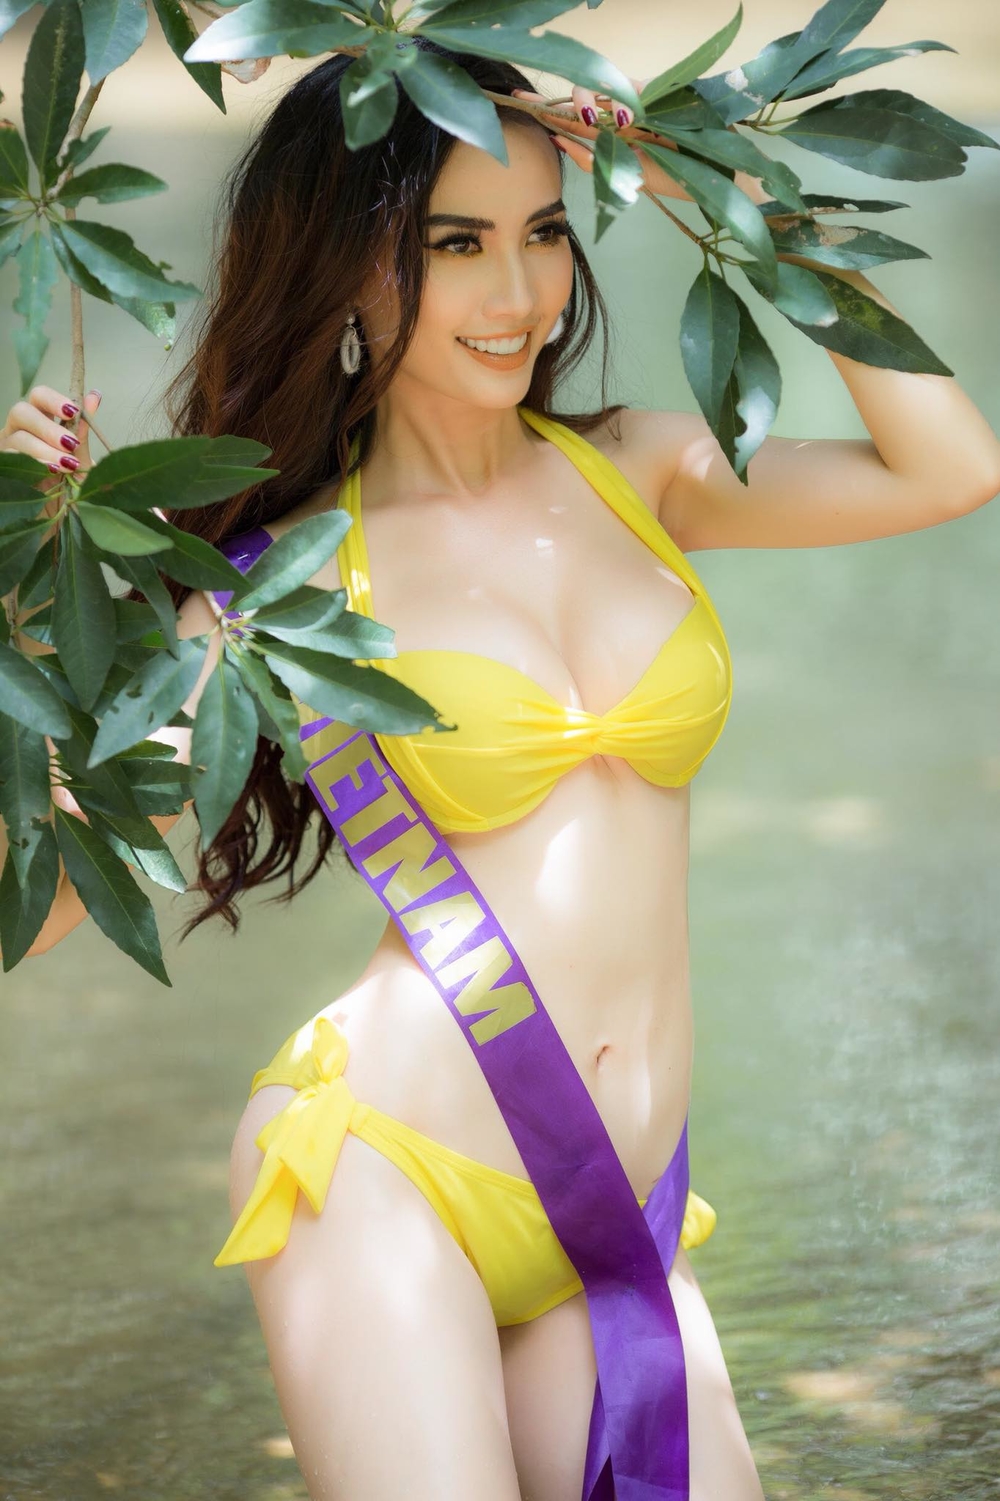 Phan Thị Mơ xuất sắc đăng quang ngôi vị Hoa hậu đại sứ du lịch thế giới 2018